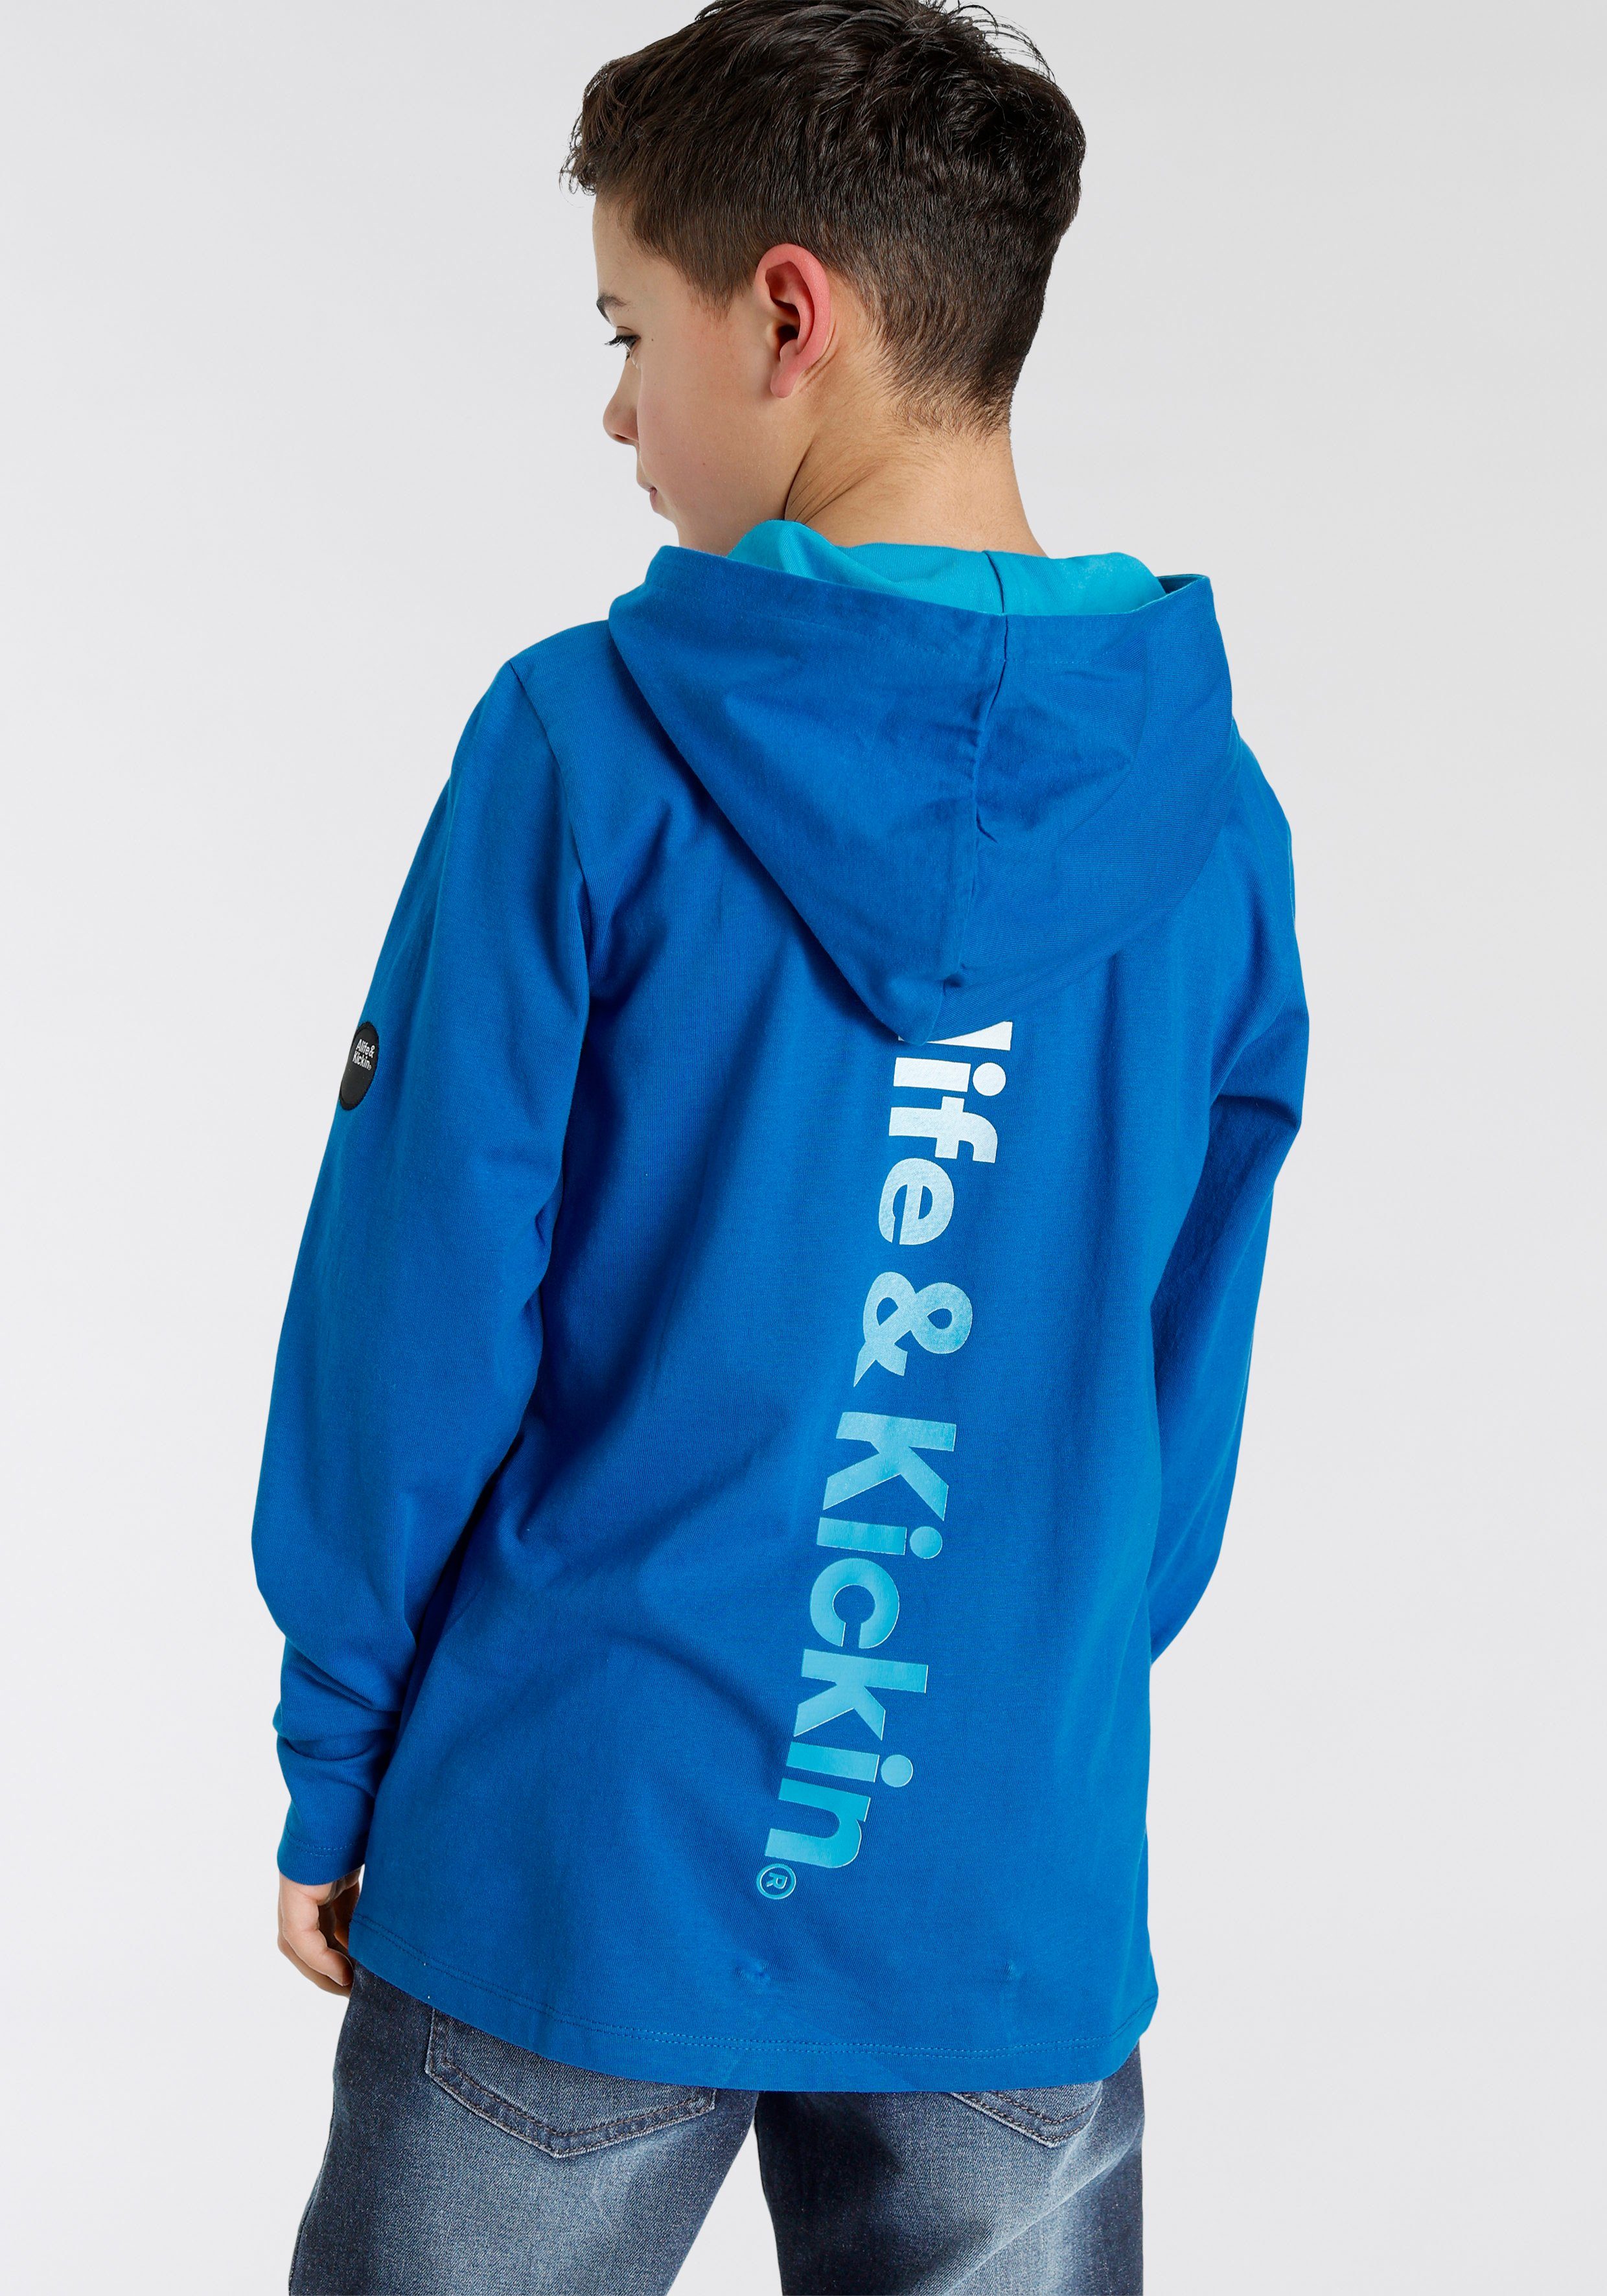 Alife im NEUE Kickin Rückenprint Farbverlauf, modischer Kapuzenshirt & Logo-Print MARKE!